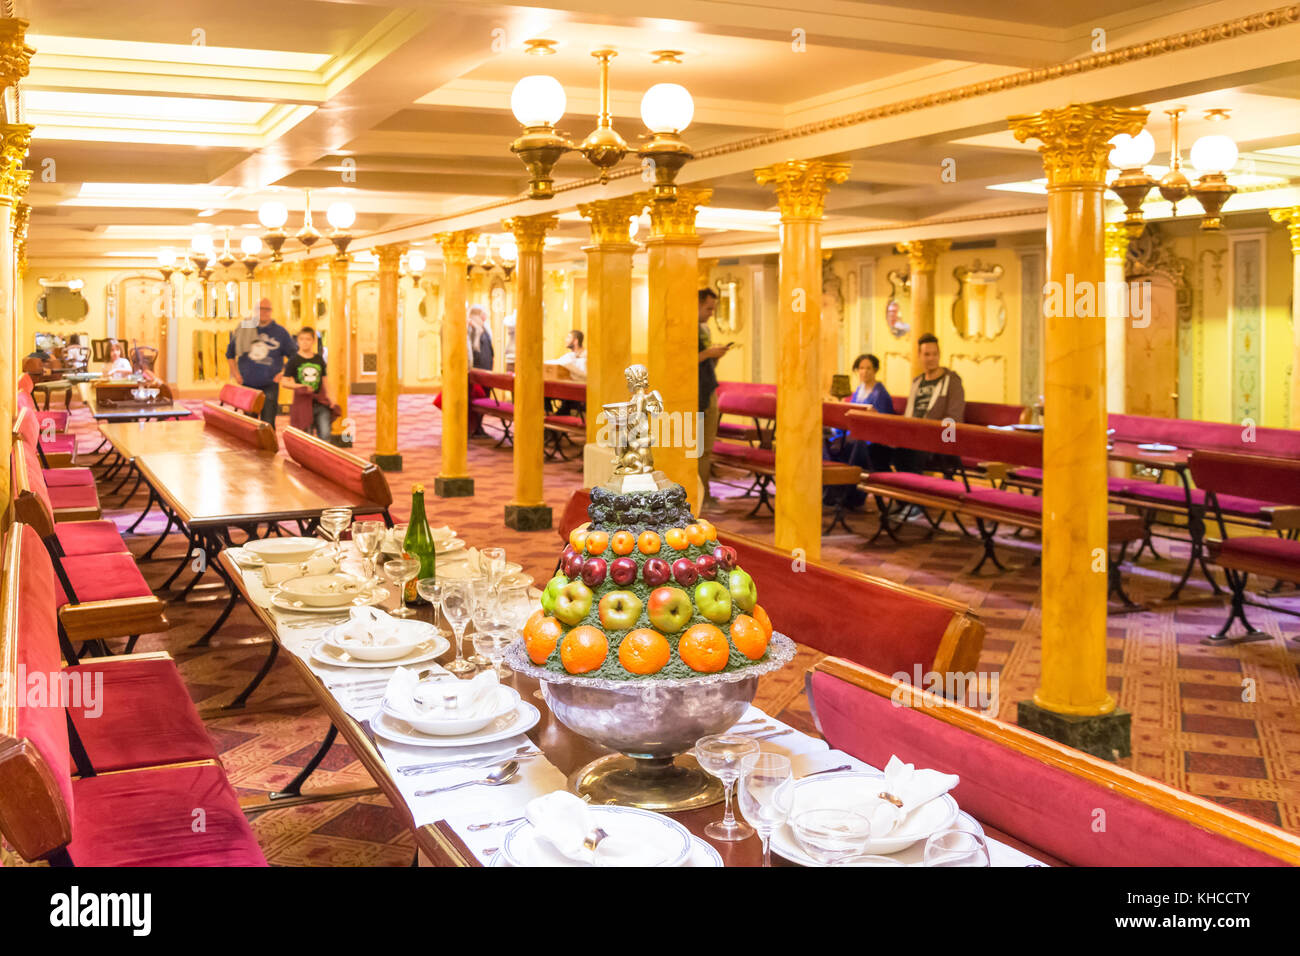 Salon salle à manger de l'intérieur du SS Great Britain de Brunel, Great Western Dockyard, Spike Island, Bristol, Angleterre, Royaume-Uni Banque D'Images